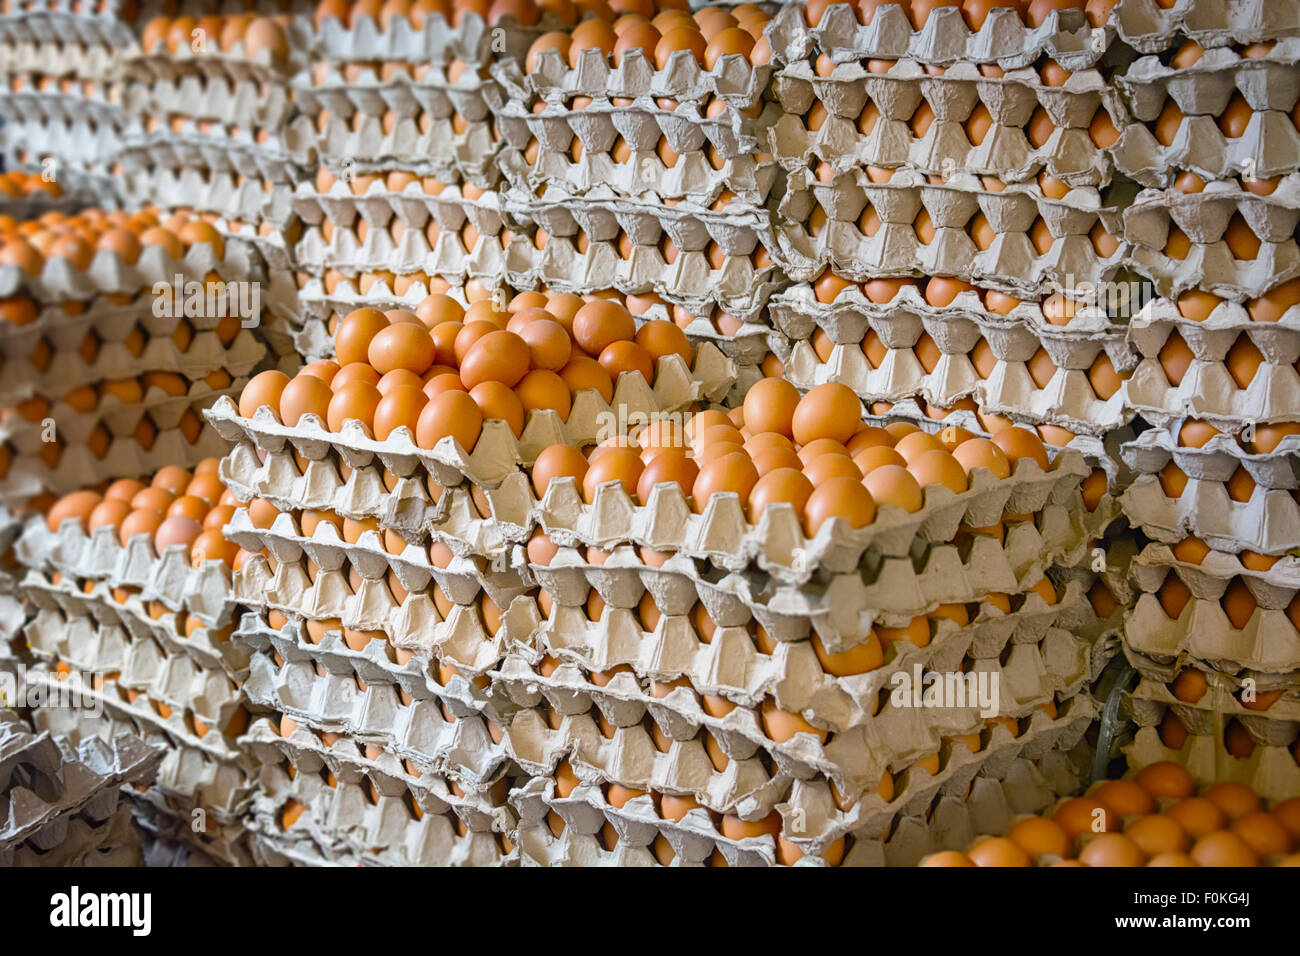 Viele Hunderte von frischen Hühnereier auf dem Display in Schalen auf einem öffentlichen Markt in Südost-Asien. Stockfoto